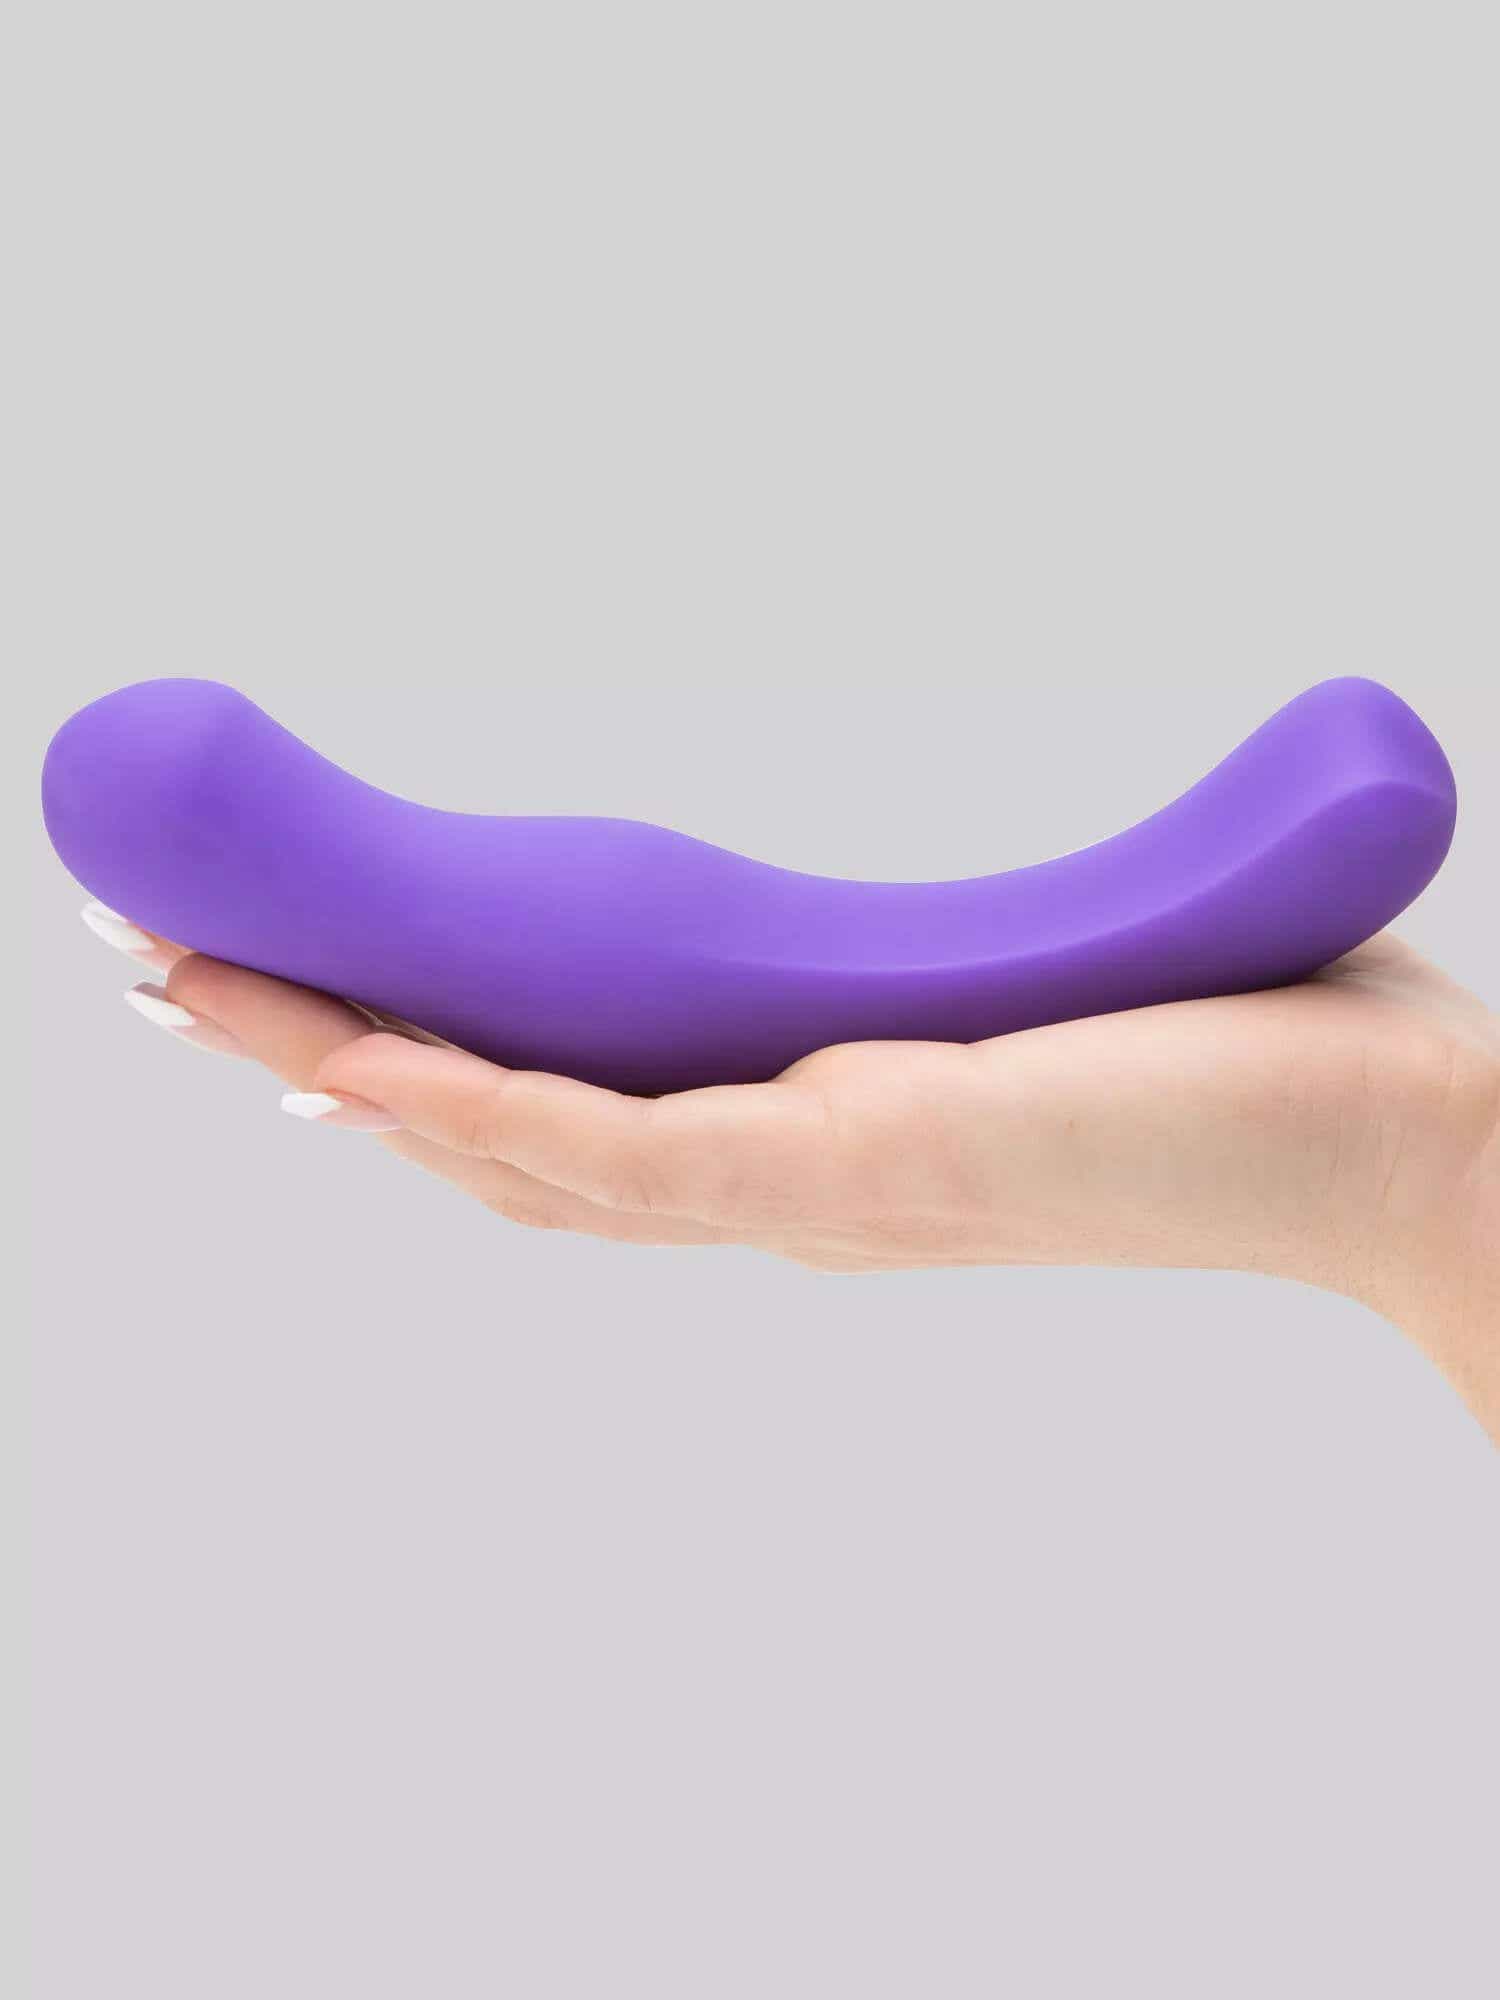 purple silicone dildo in hand